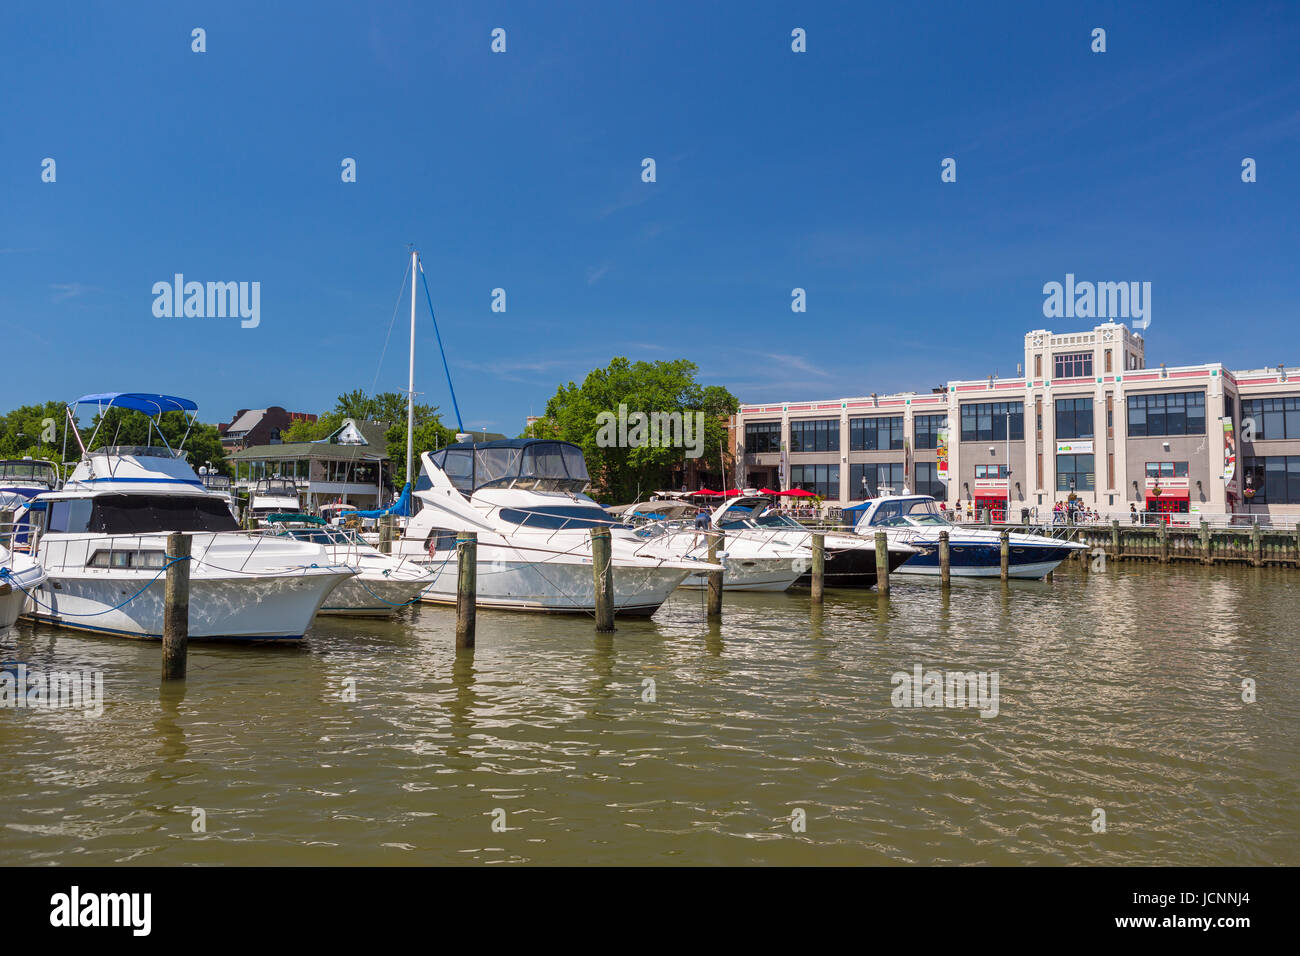 ALEXANDRIA, Virginia, Stati Uniti d'America - Il Siluro Factory Art Center, in Old Town Alexandria, fiume Potomac waterfront, e barche in marina. Foto Stock